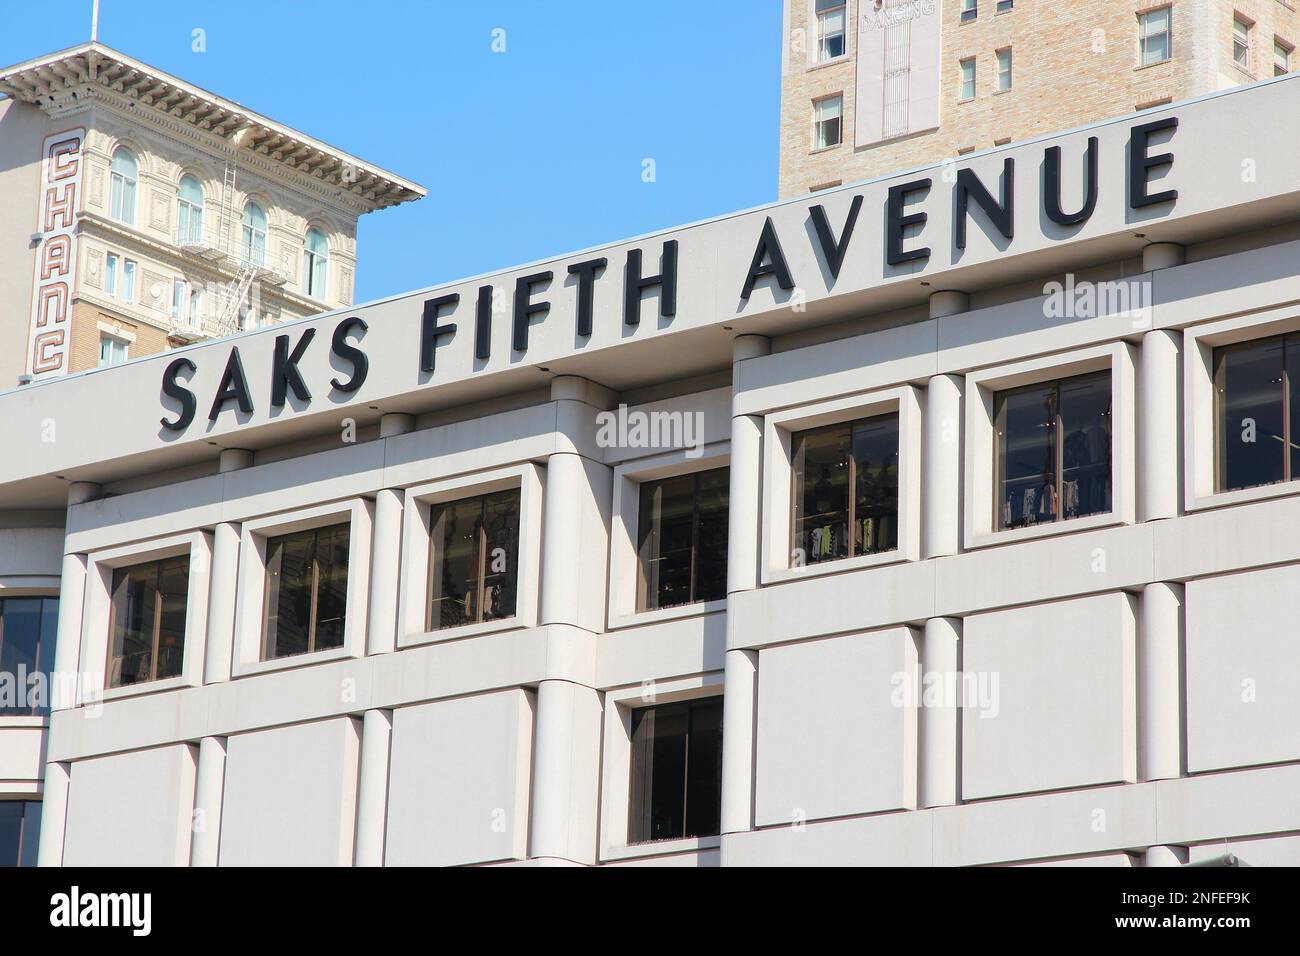 Saks Fifth Avenue in Los Angeles - LOS ANGELES - CALIFORNIA Stock